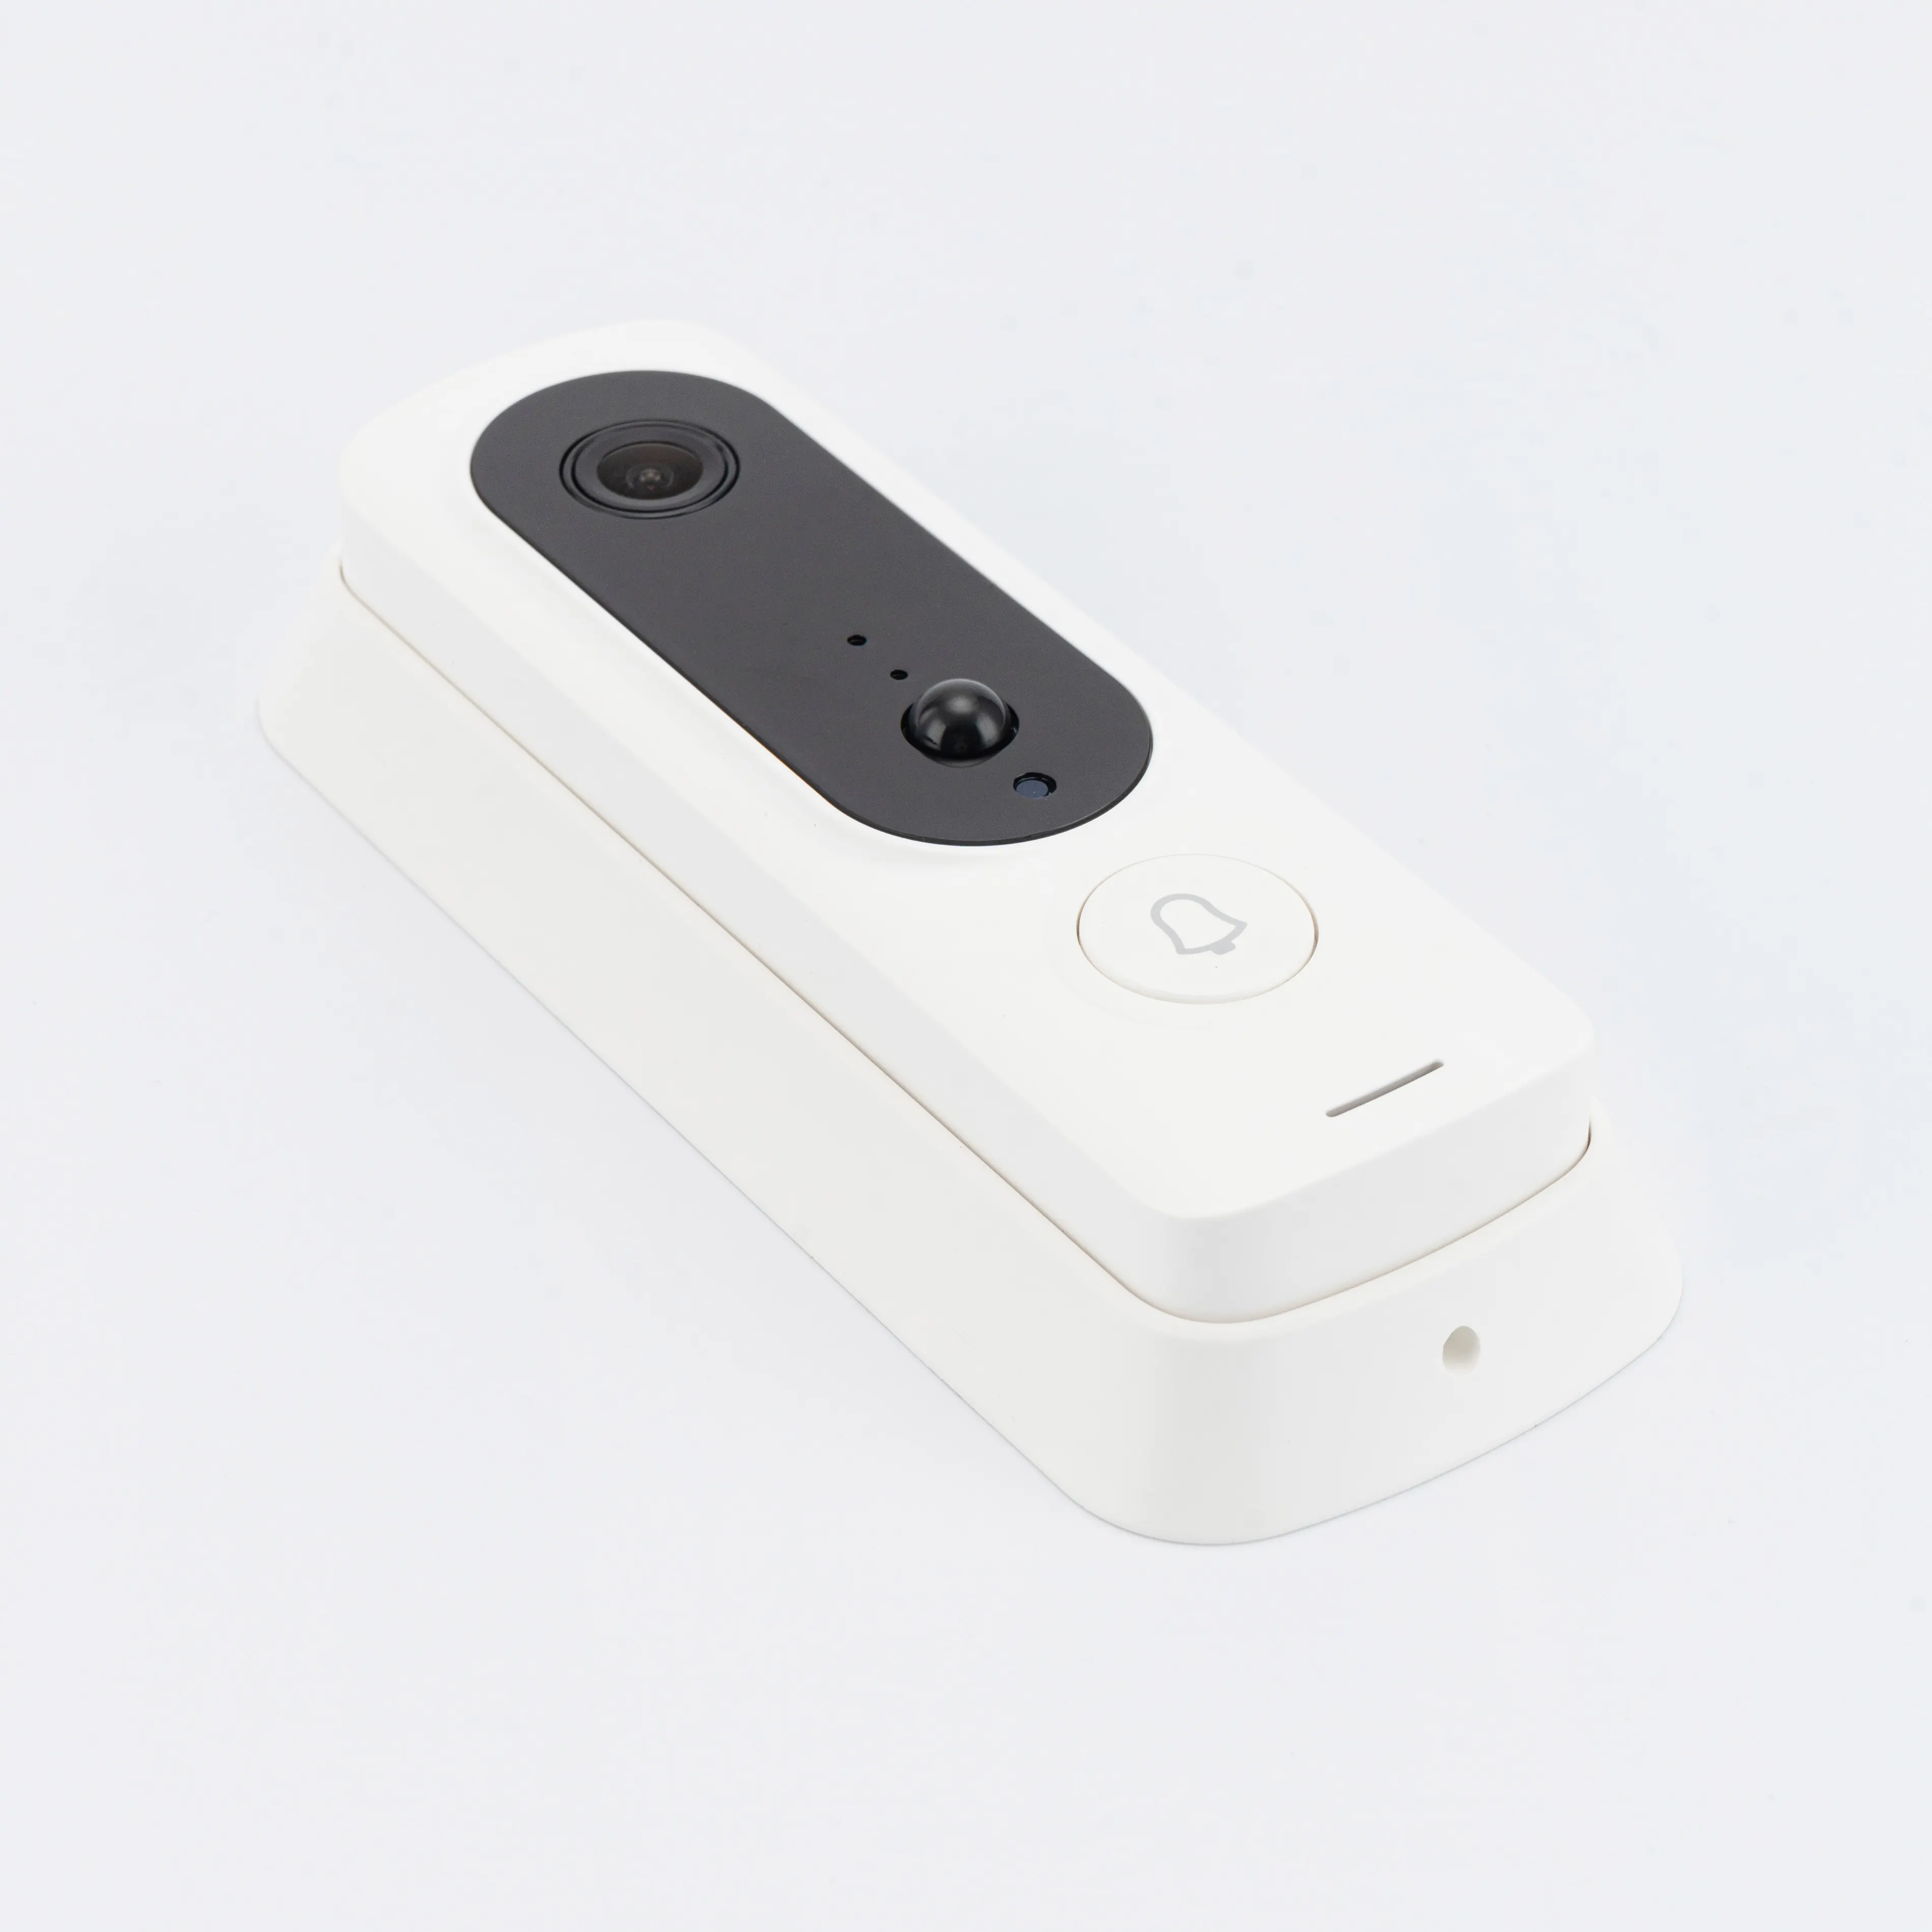 Tuya zigbee-جرس باب المنزل الذكي ببطاقة sim وكاميرا بدقة 1080 بكسل وشاشة عالية الوضوح, صيني زهيد السعر